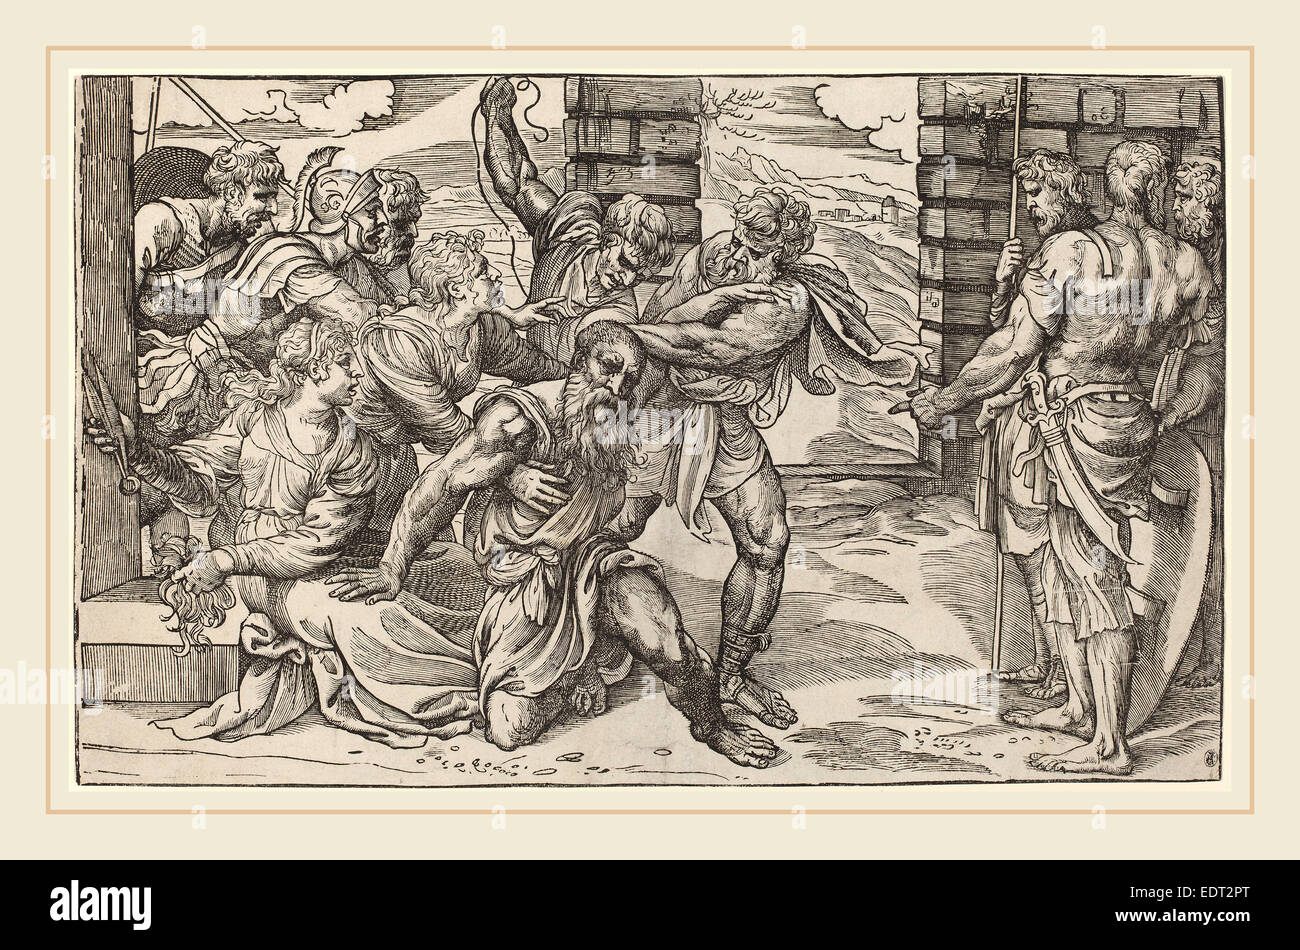 Niccolò Boldrini après Titien (italien, 1510-1566 ou après), Samson et Dalila, ch. 1540, gravure sur bois Banque D'Images